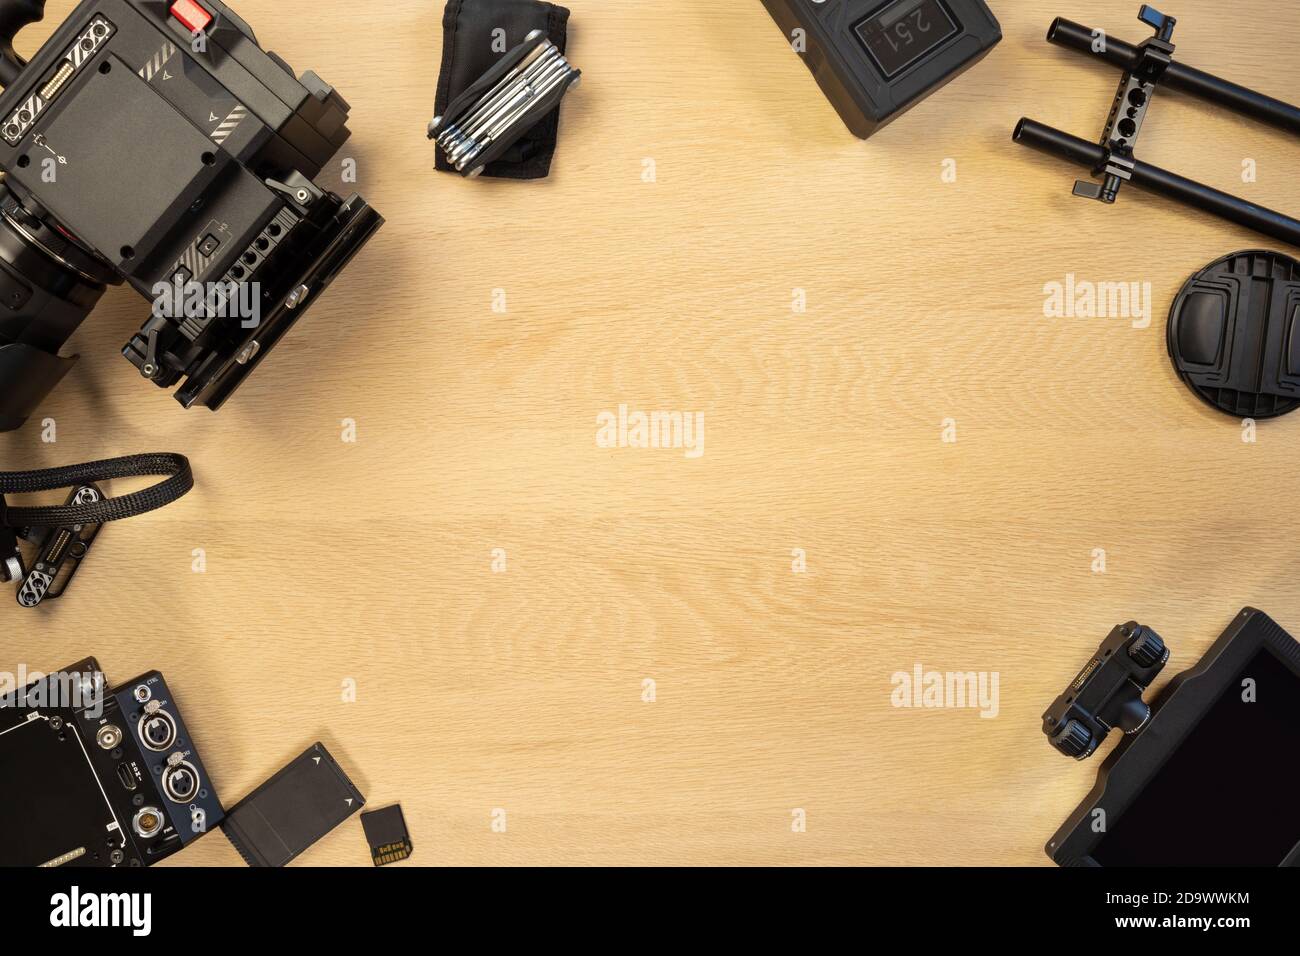 Directamente sobre la toma de la cámara de vídeo y accesorios en la mesa Foto de stock